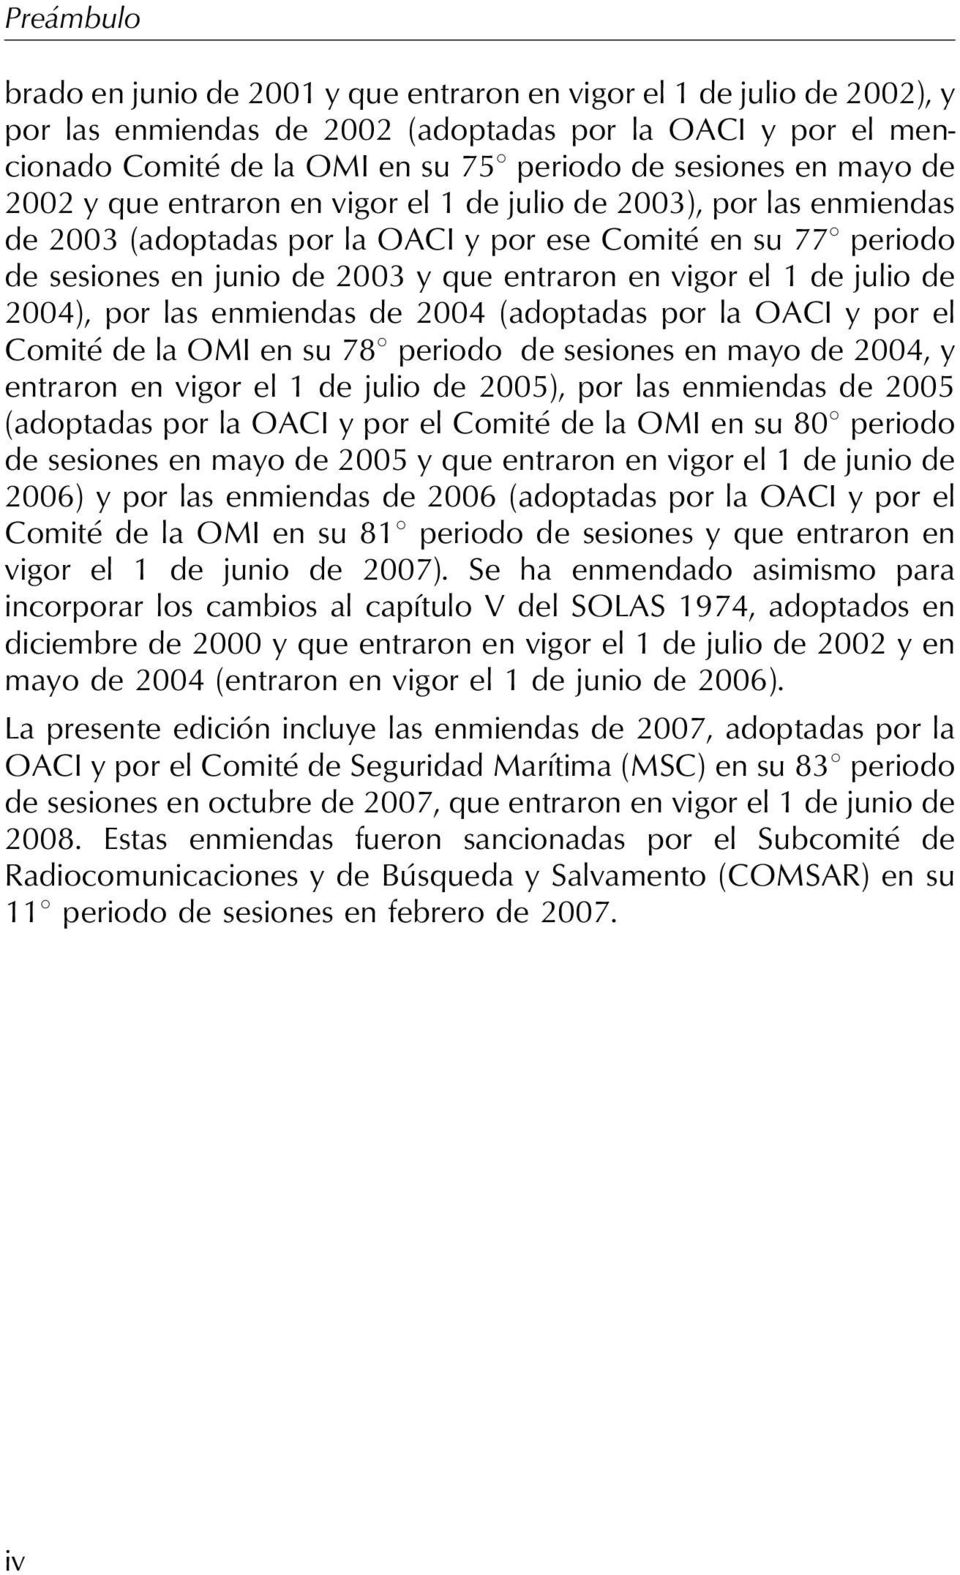 vigor el 1 de julio de 2004), por las enmiendas de 2004 (adoptadas por la OACI y por el Comité de la OMI en su 788 periodo de sesiones en mayo de 2004, y entraron en vigor el 1 de julio de 2005), por